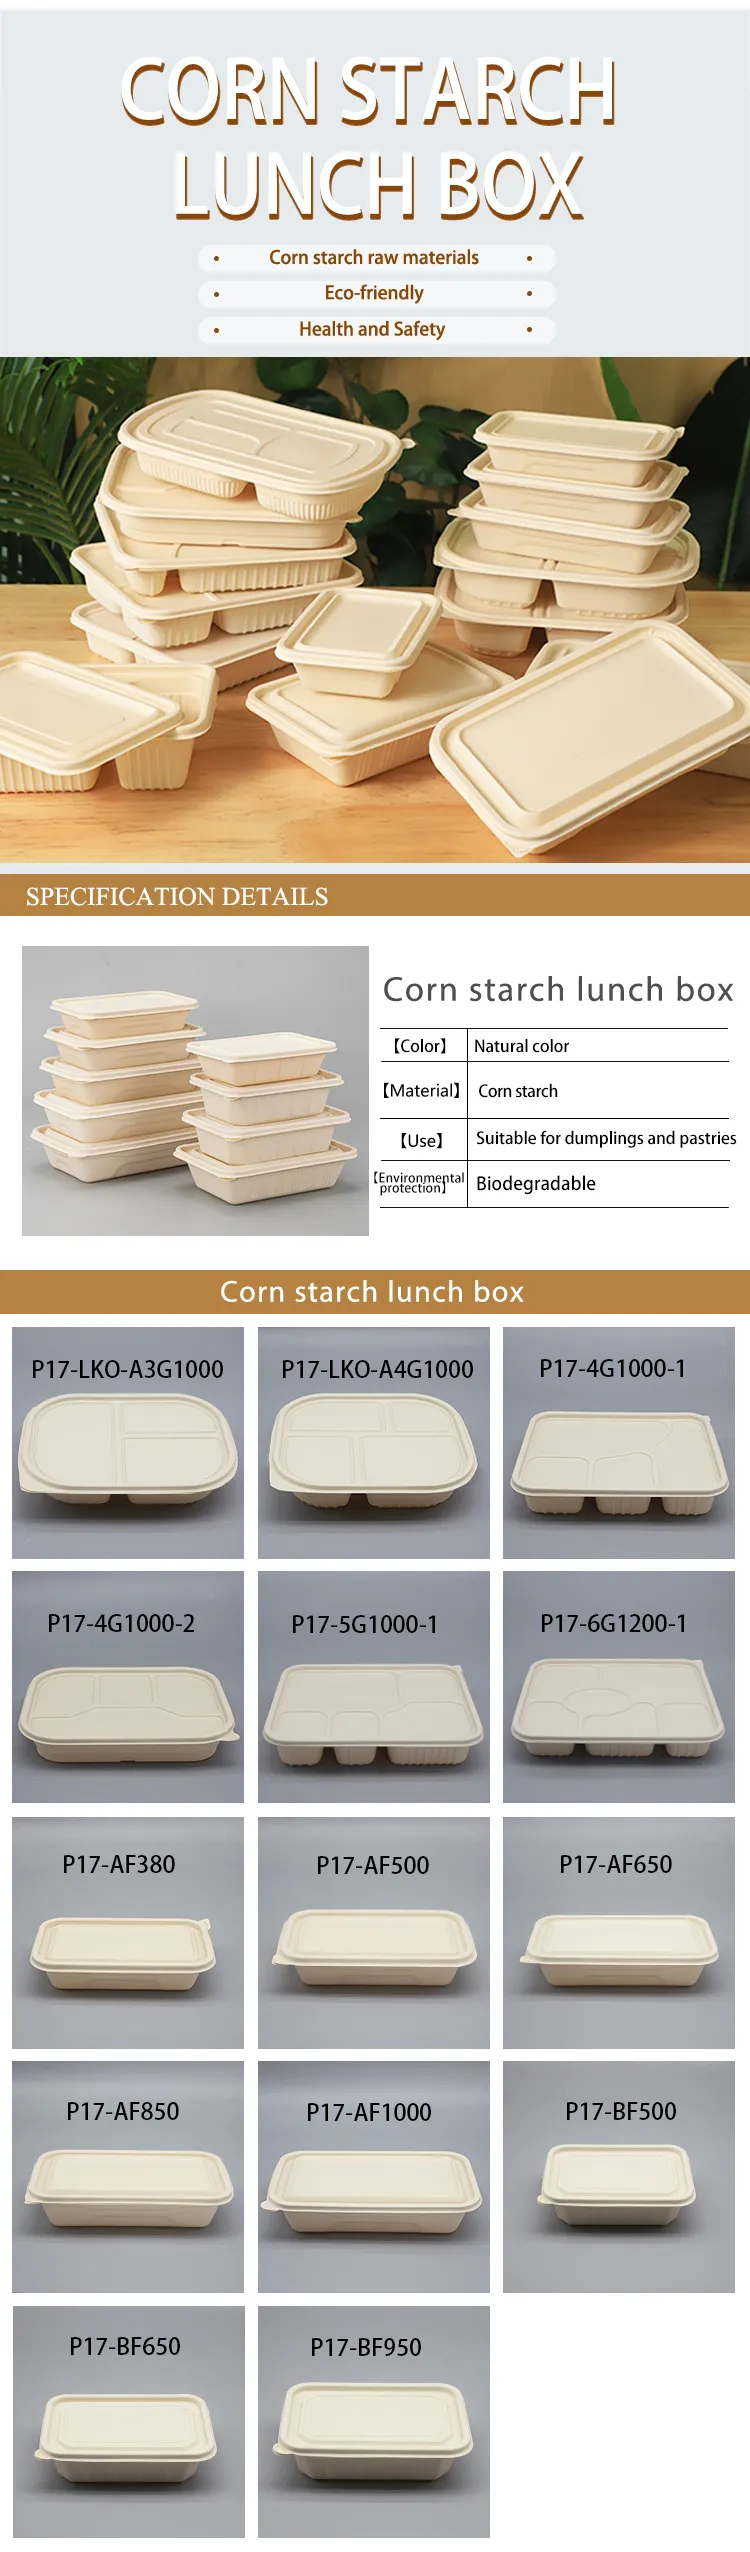 박스 용기를 싸는 LOKYO 3 4 5 칸막이는 녹말 미생물에 의해 분해된 환경적 점심 급식 박스를 작은 알로 만듭니다